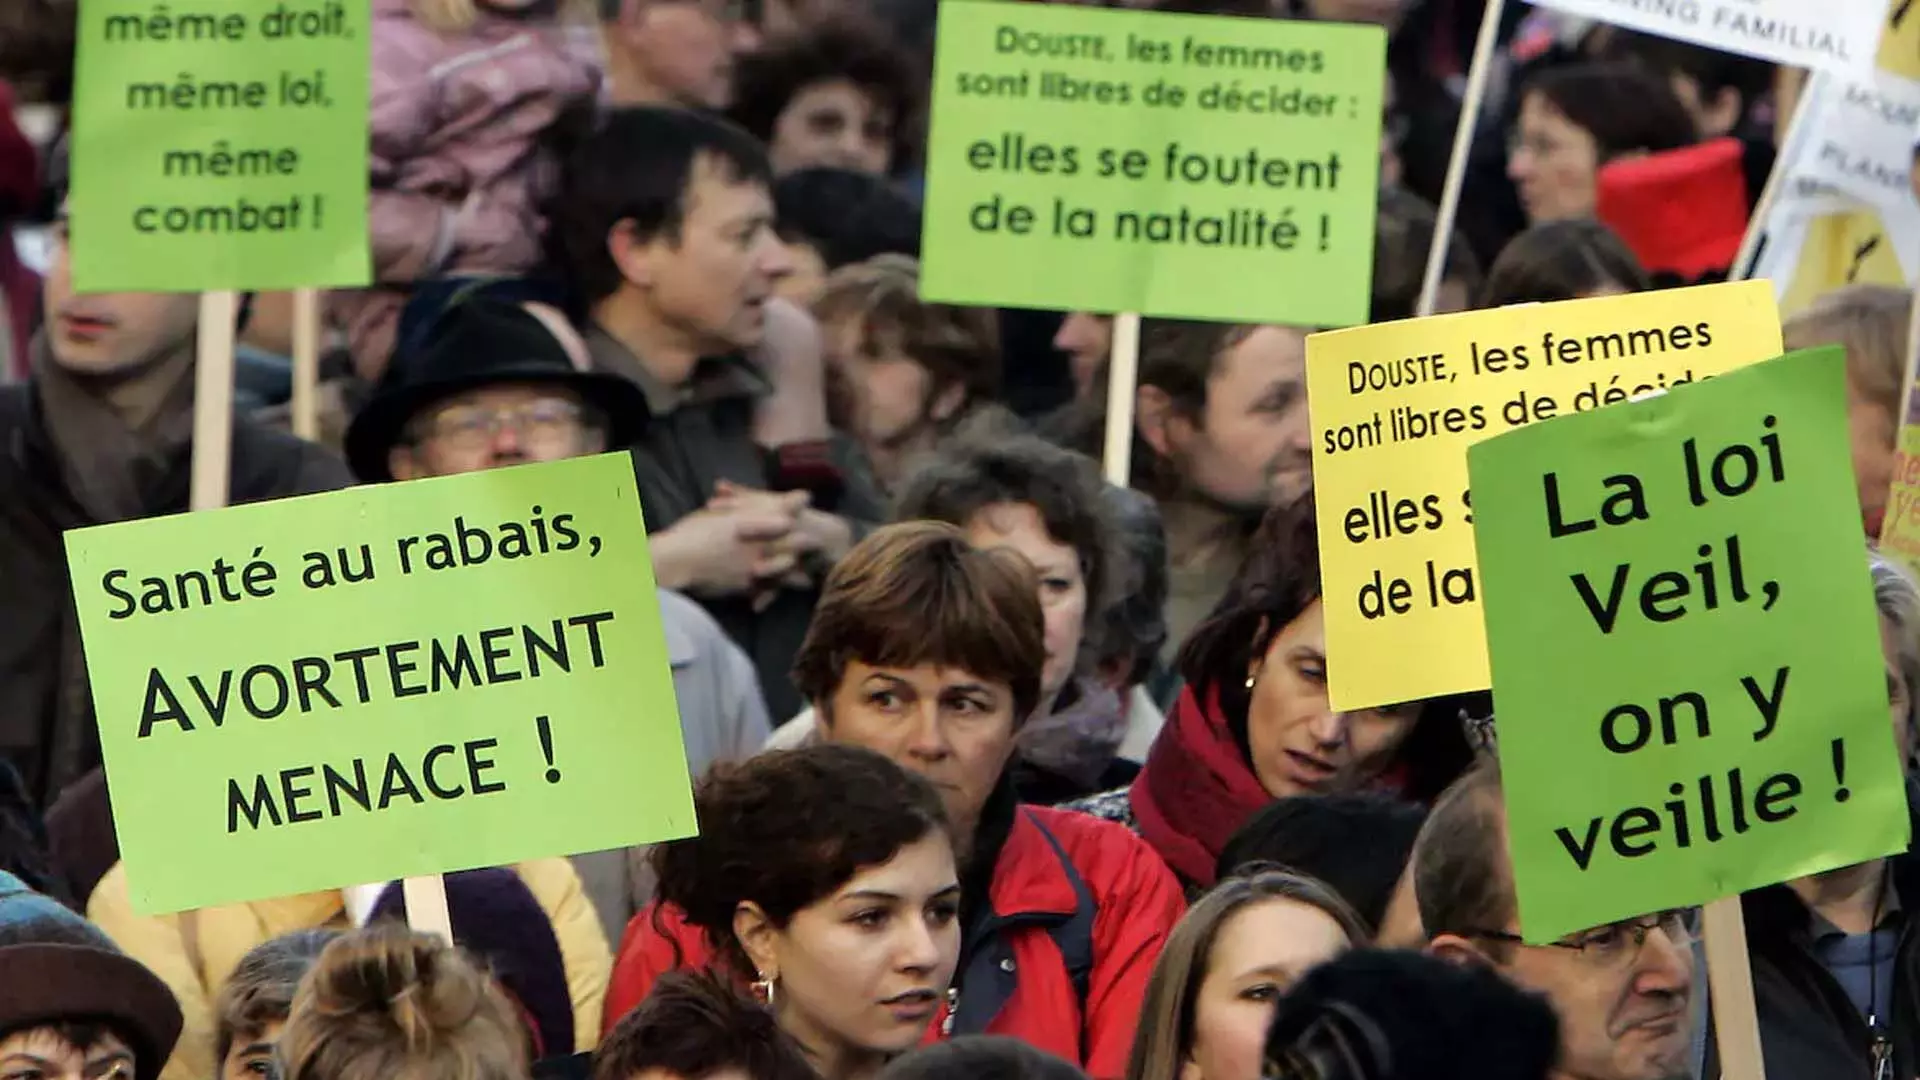 फ्रांस गर्भपात को संवैधानिक अधिकार बनाने के लिए तैयार